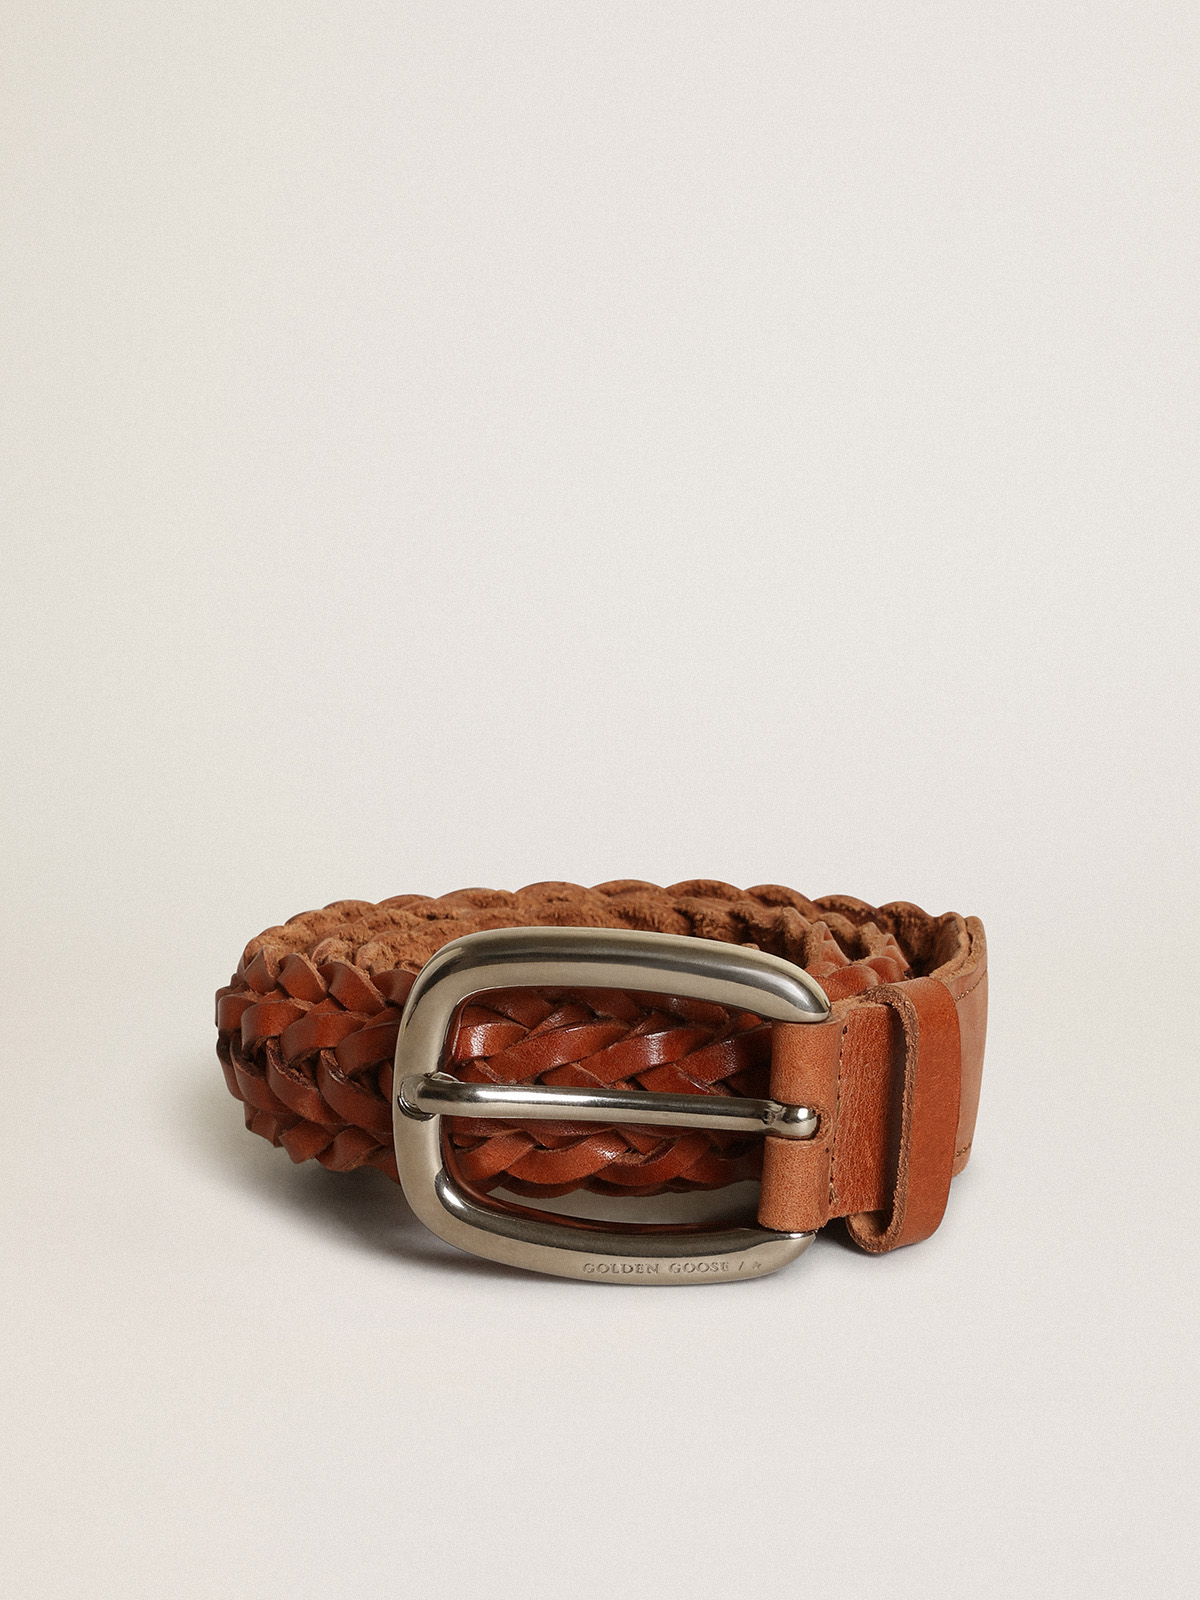 Vintage Leather Belt Women 32 Brown LInked Braided Adjust Brass Buckle  Turkish 